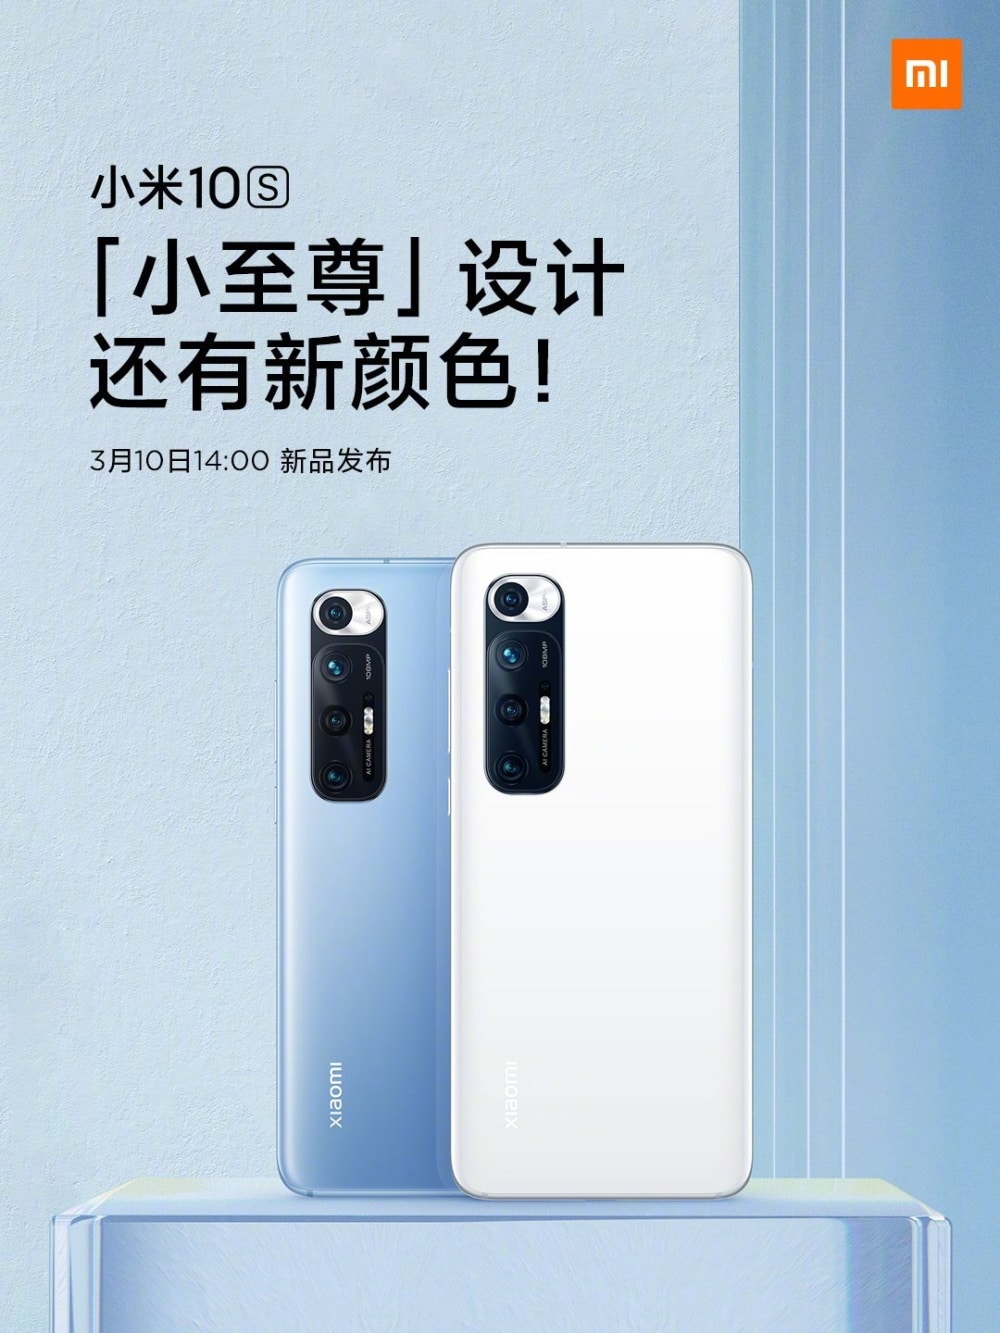 Xiaomi Mi 10s, com câmera de 108 MP, será lançado na quarta-feira, 10 de março